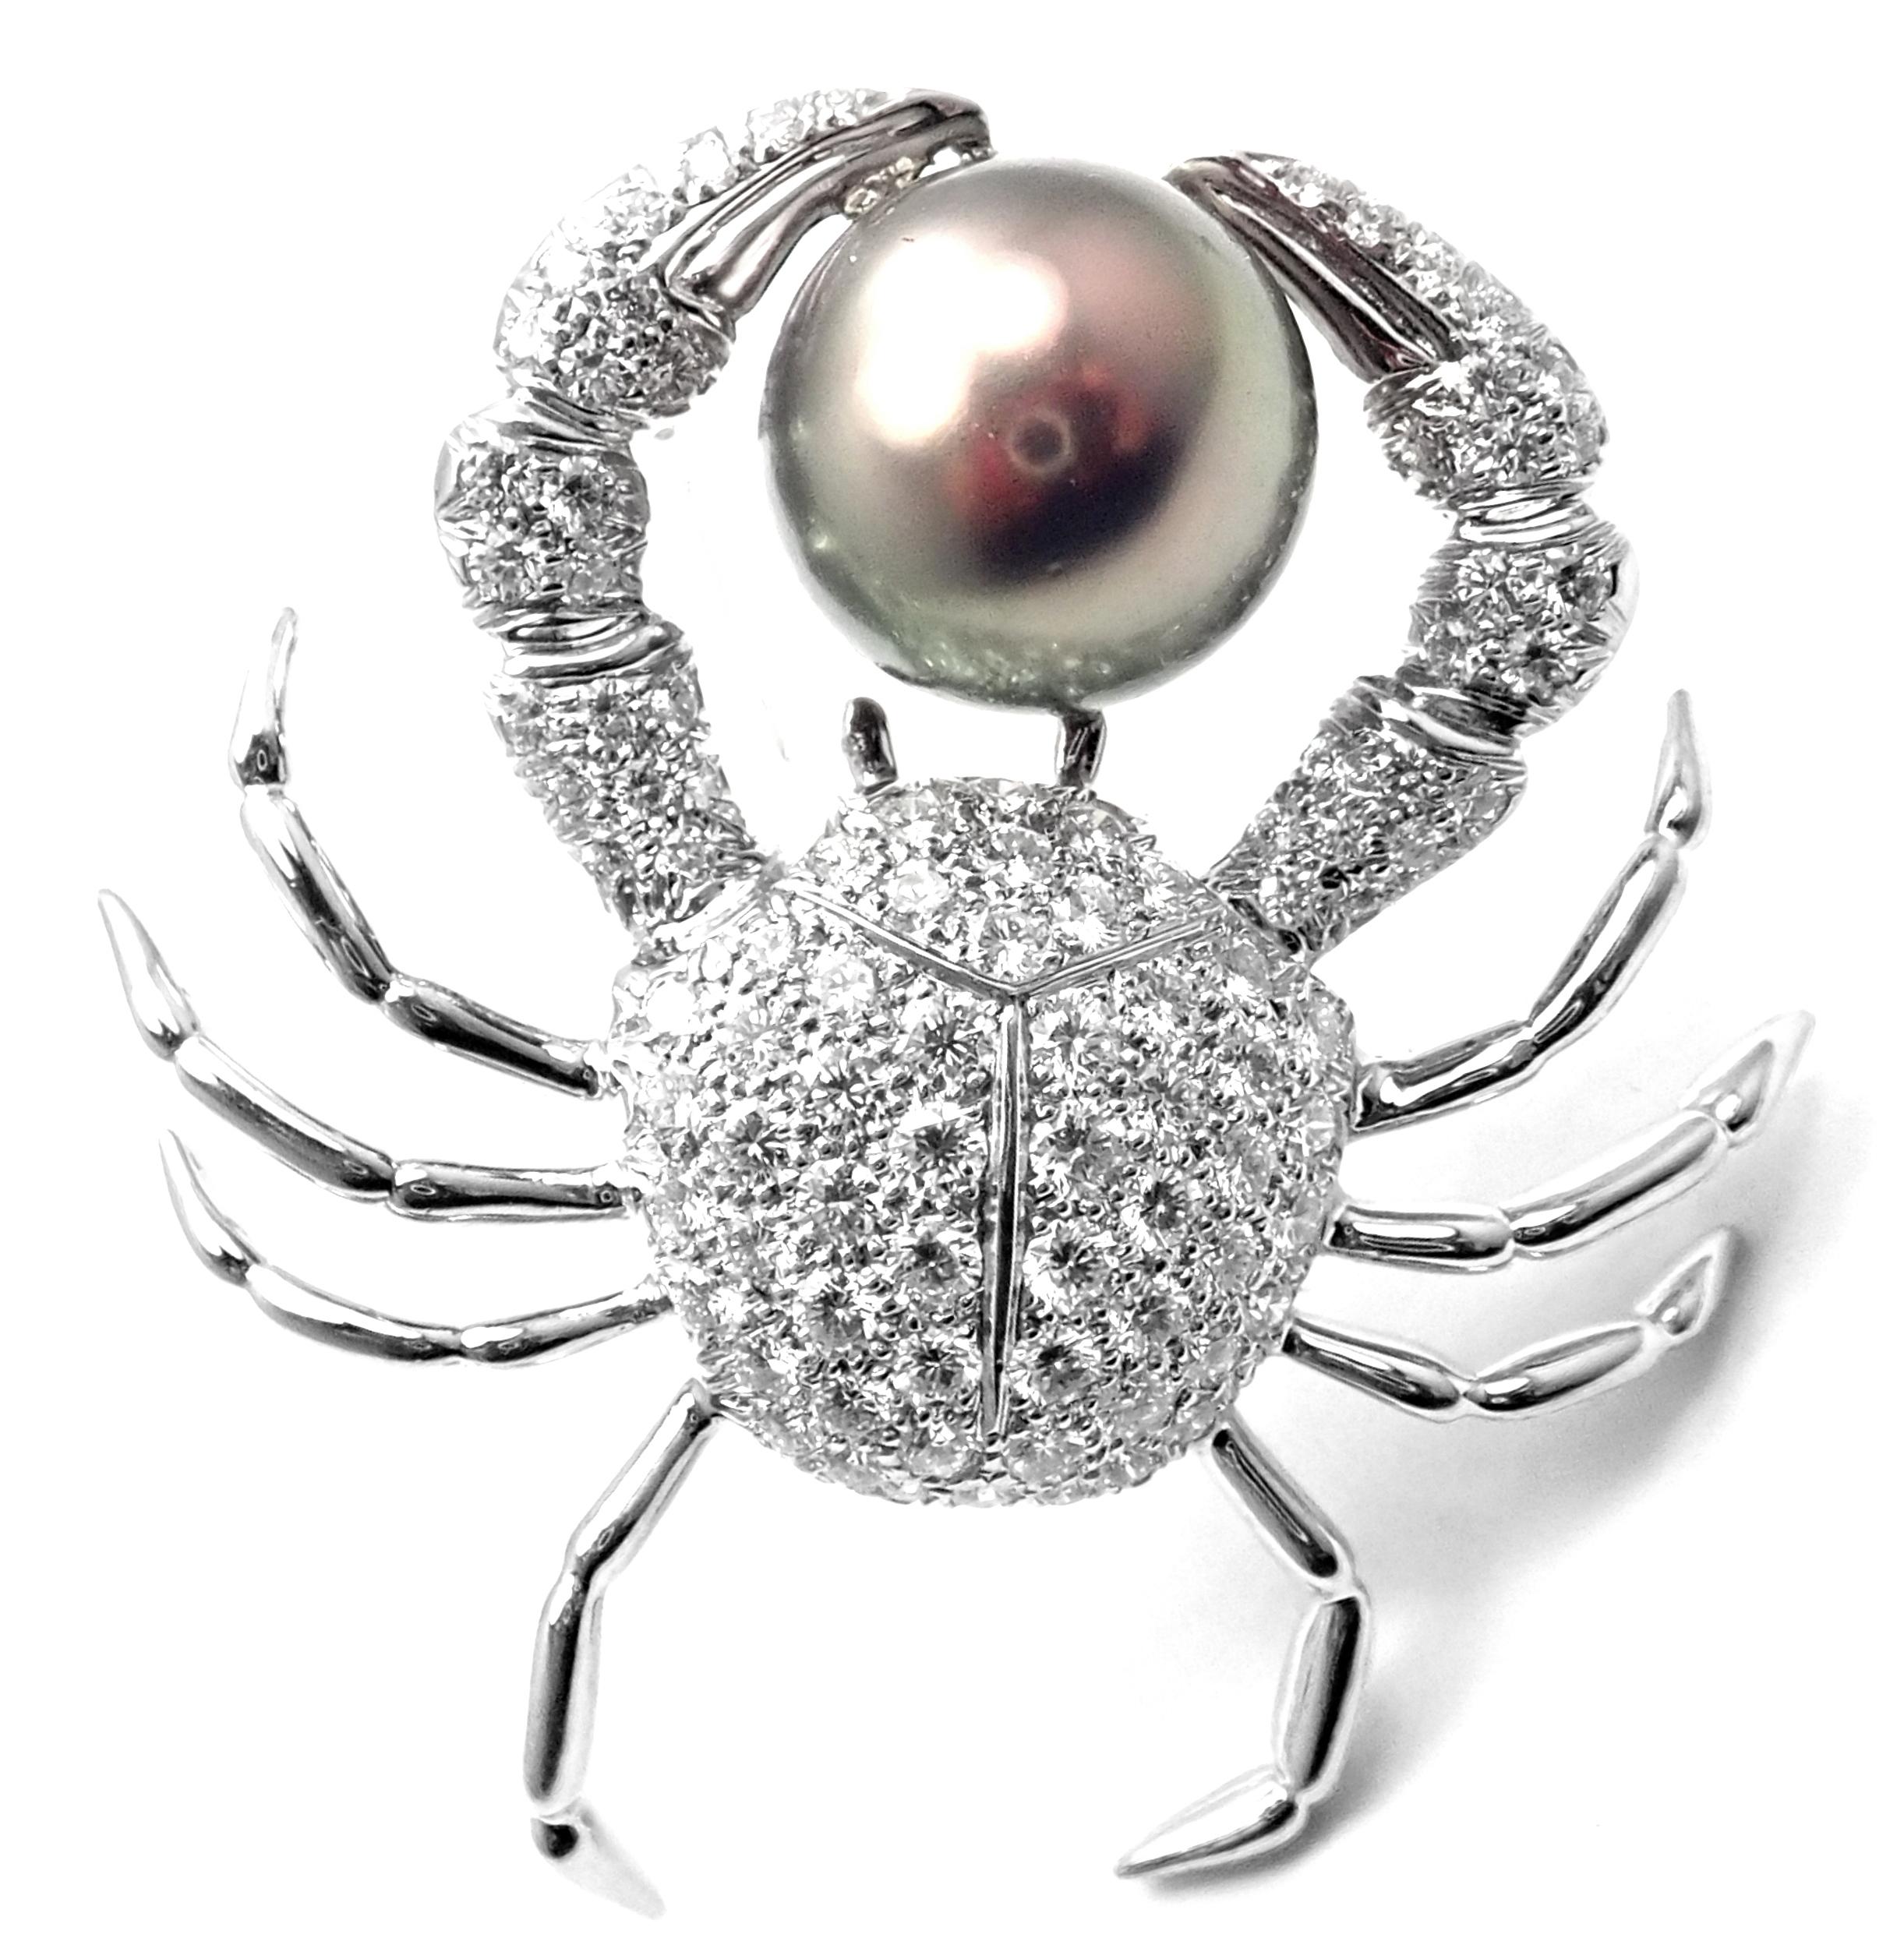 Broche crabe en platine, diamant et perle de Tahiti de Tiffany & Co.
Avec des diamants ronds de taille brillante de pureté VS1 et de couleur E. Poids total d'environ 2,70 ct
1 grande perle grise de Tahiti 14.5mm
Détails : 
Mesures : 1 3/4